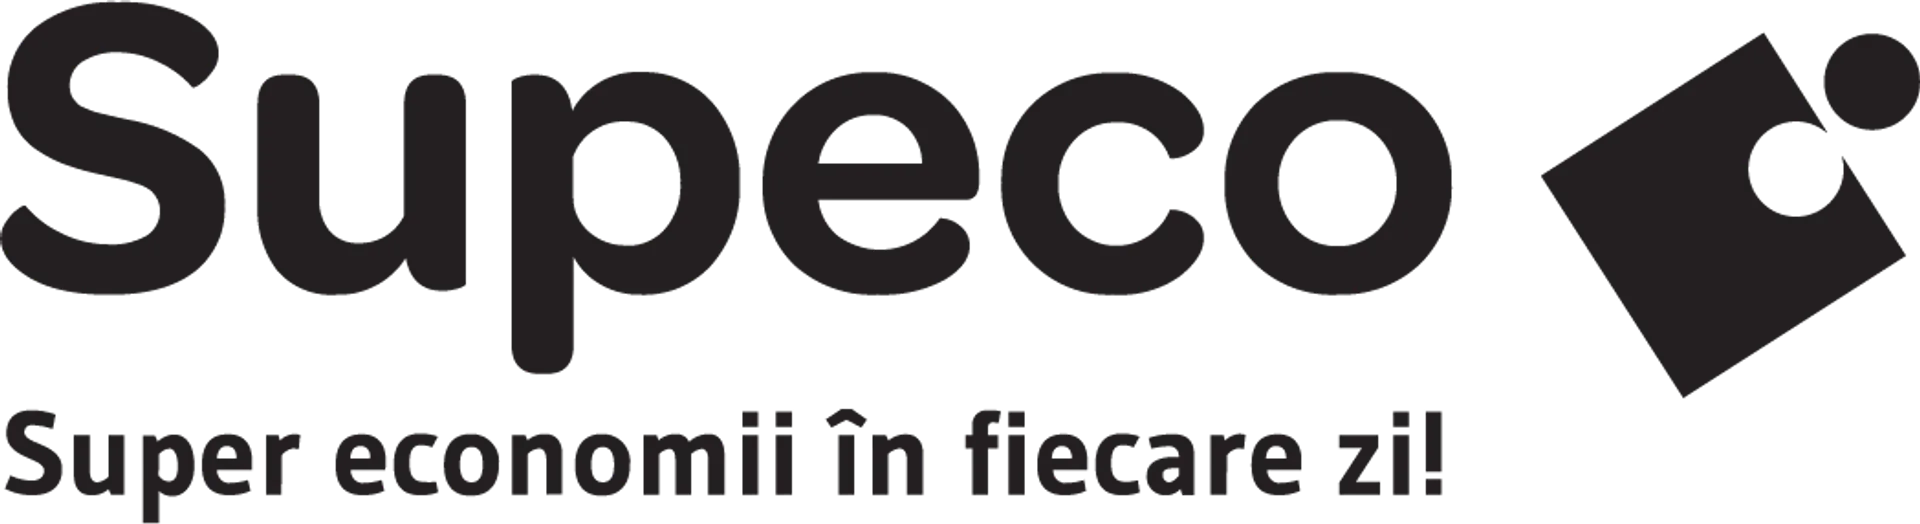 SUPECO logo